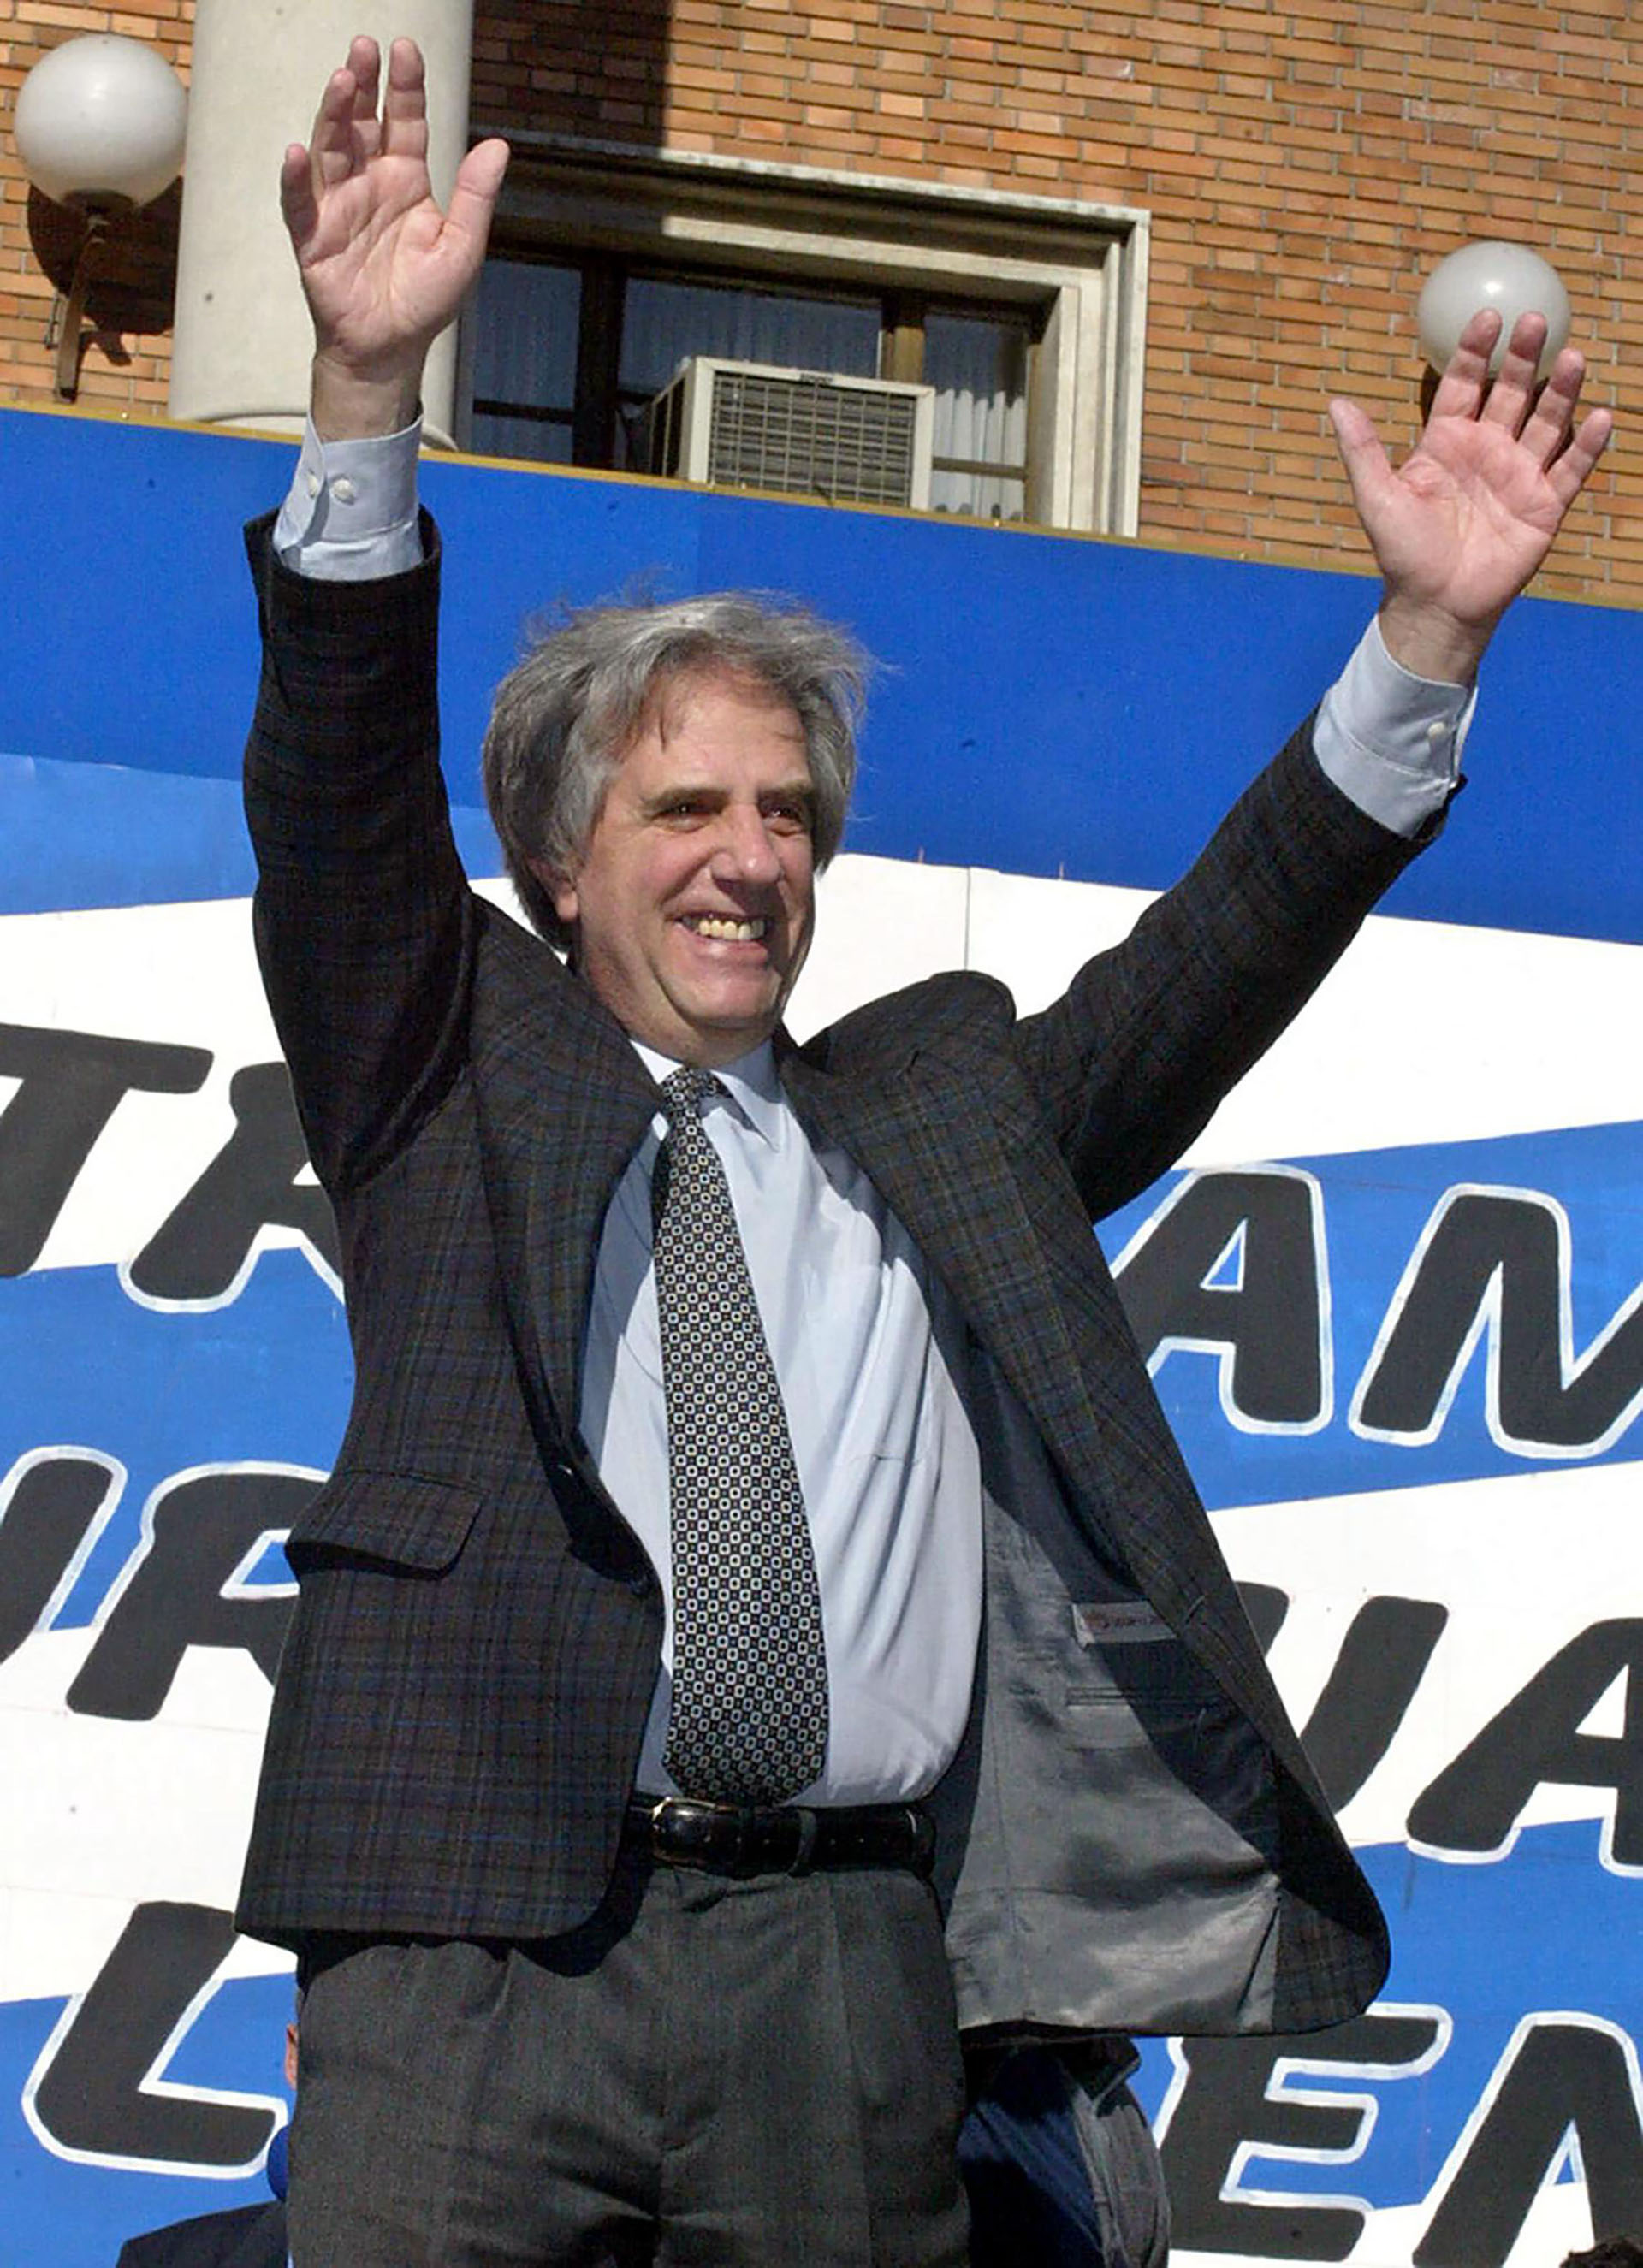 Tabaré Vázquez, ex intendente de Montevideo, había intentado llegar a la presidencia en 1994 y 1999, pero consiguió el triunfo en 2004